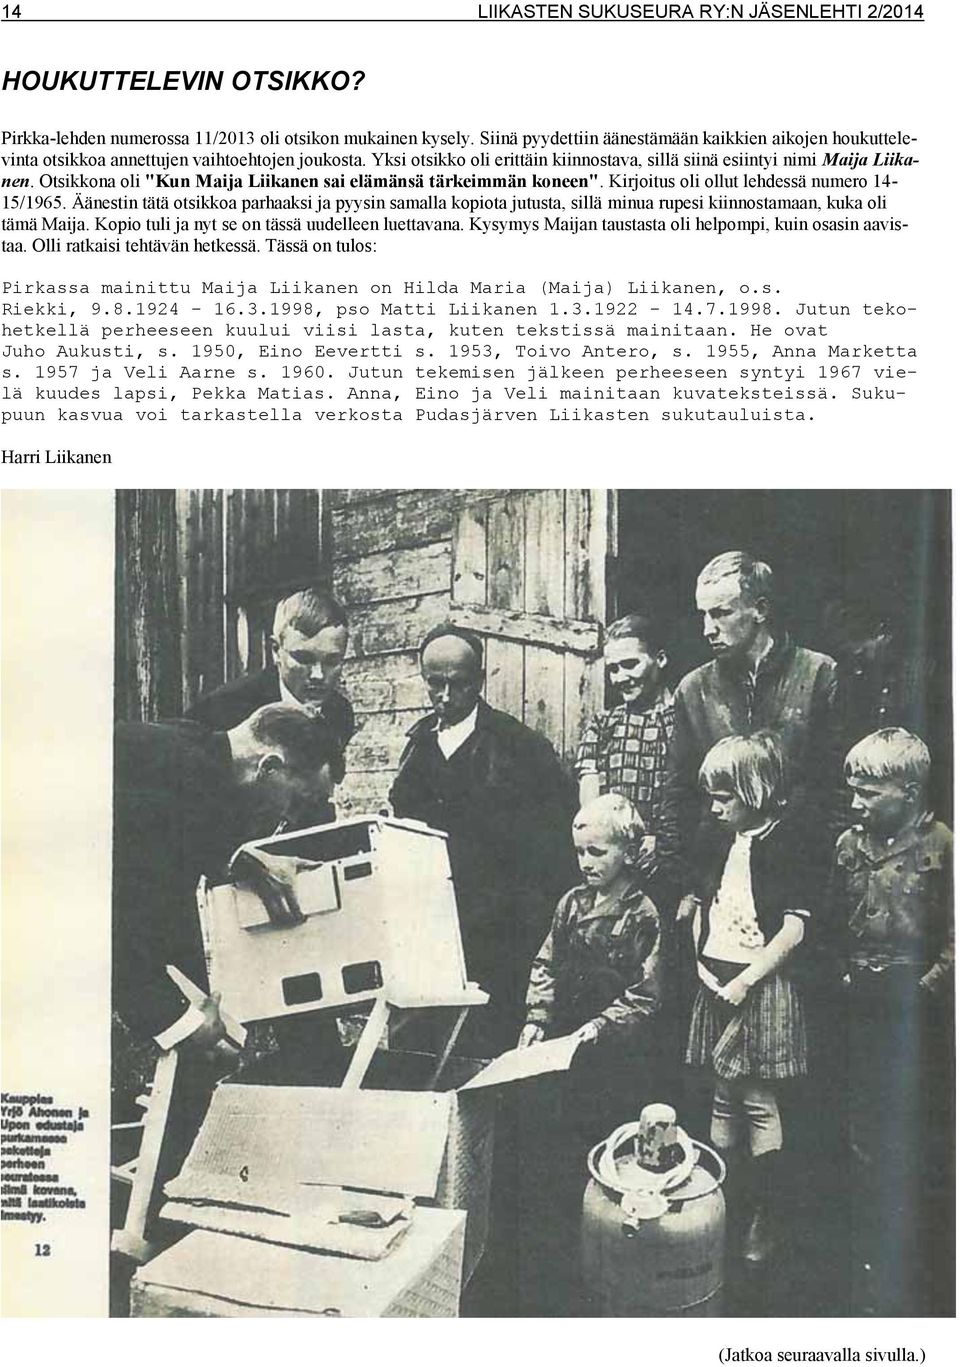 Otsikkona oli "Kun Maija Liikanen sai elämänsä tärkeimmän koneen". Kirjoitus oli ollut lehdessä numero 14-15/1965.